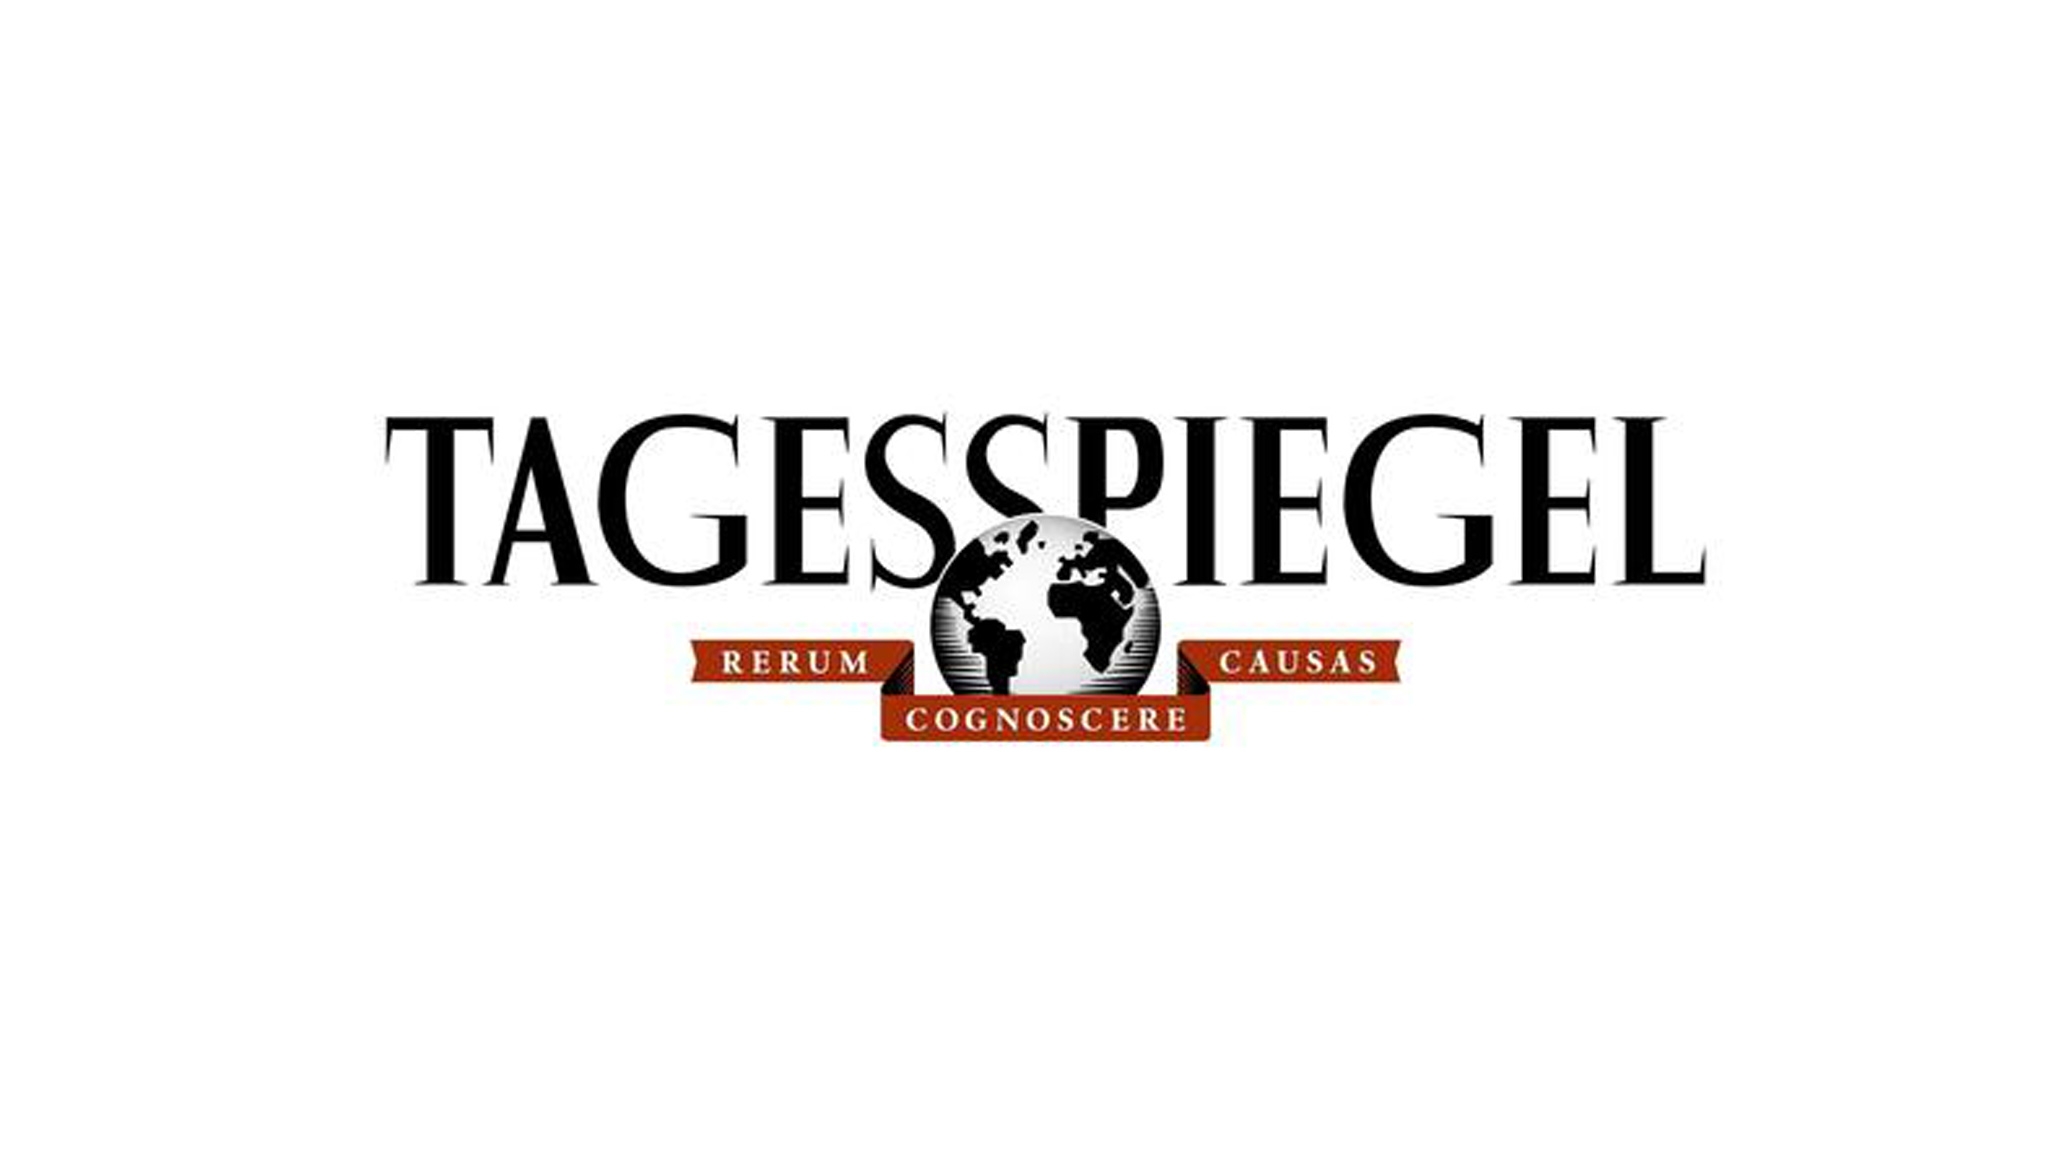 Das Logo des Berliner Tageszeitung "Tagesspiegel"